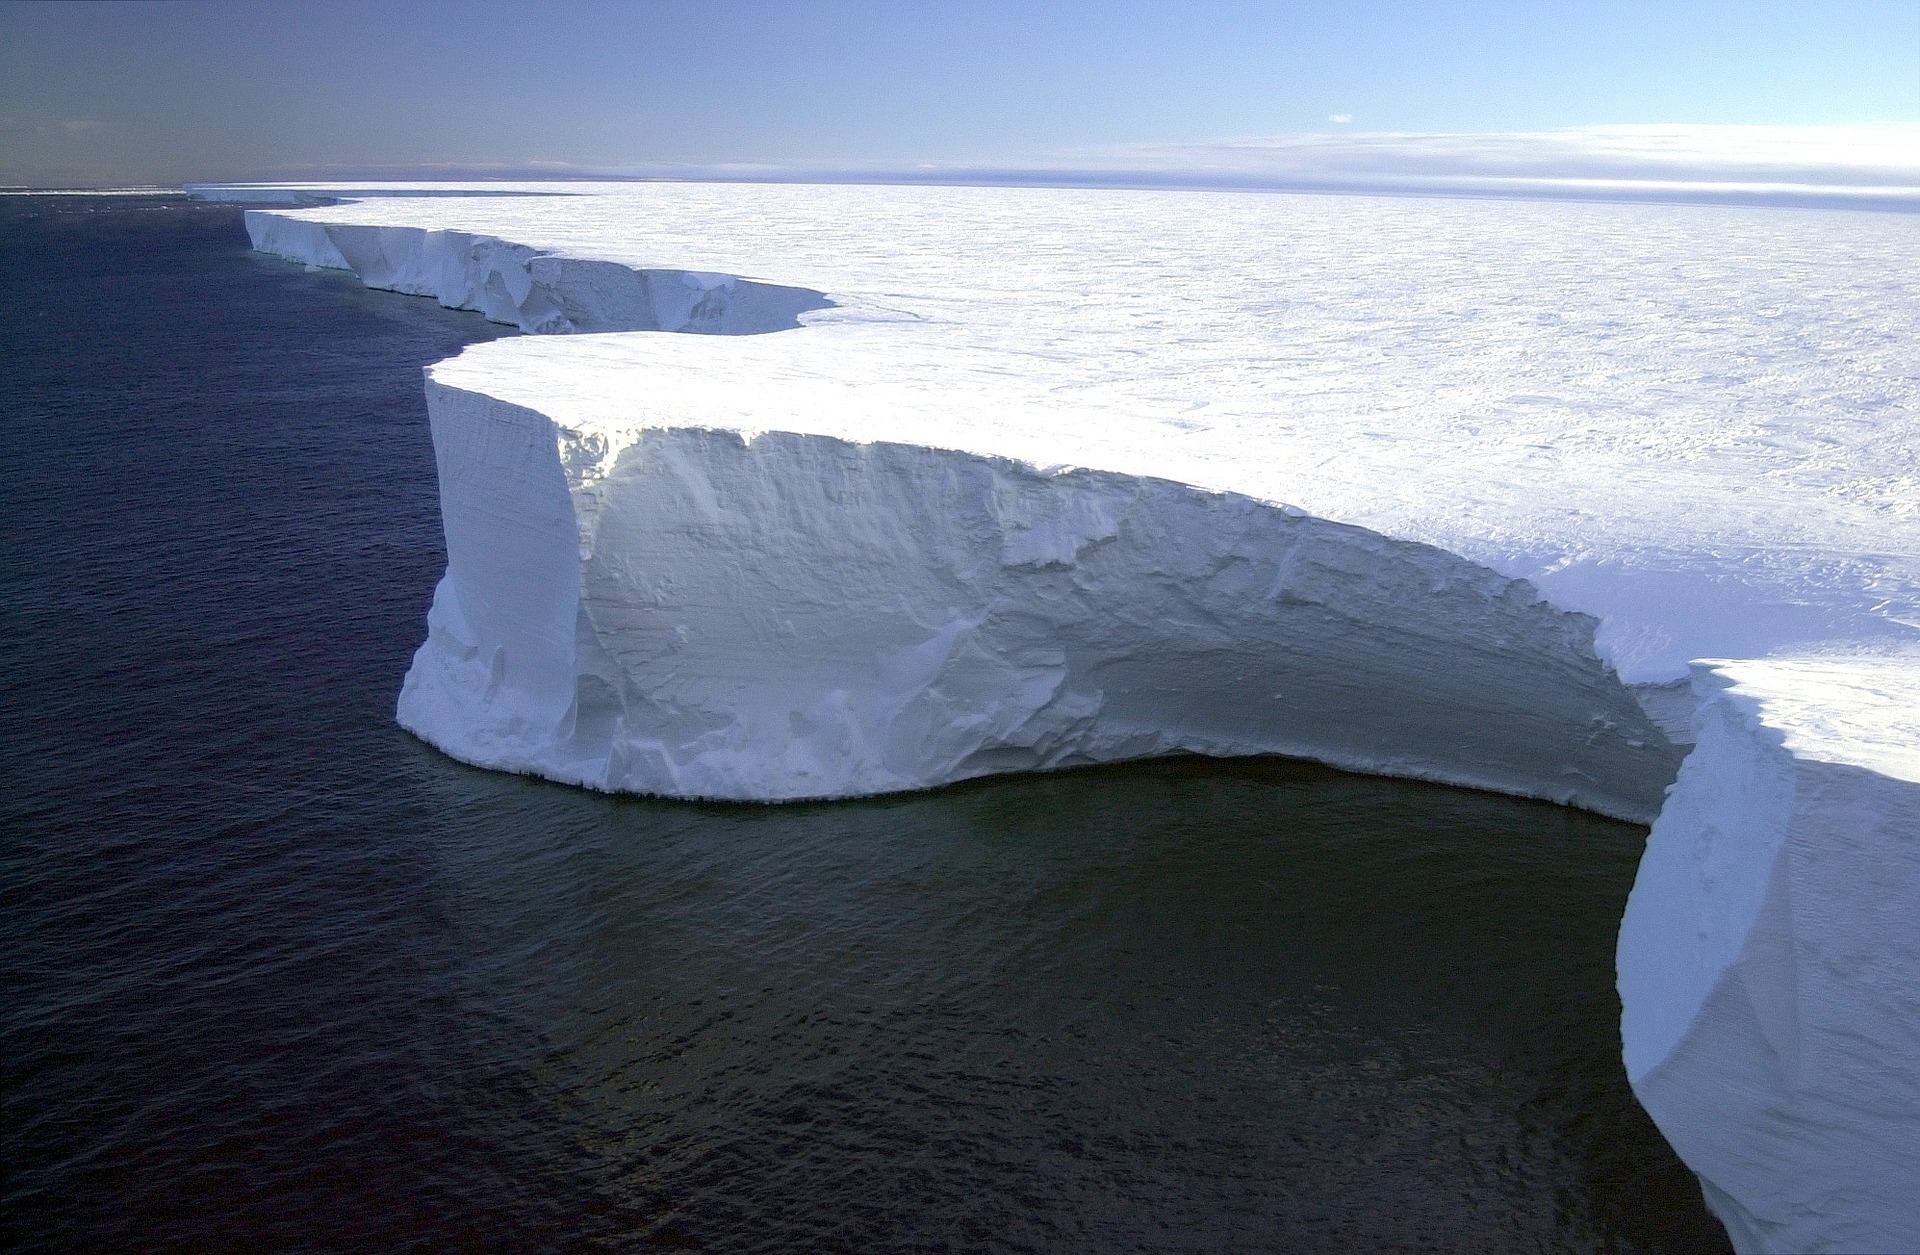 Антарктида не так безжизненна. Под морским льдом могут скрываться планктоны